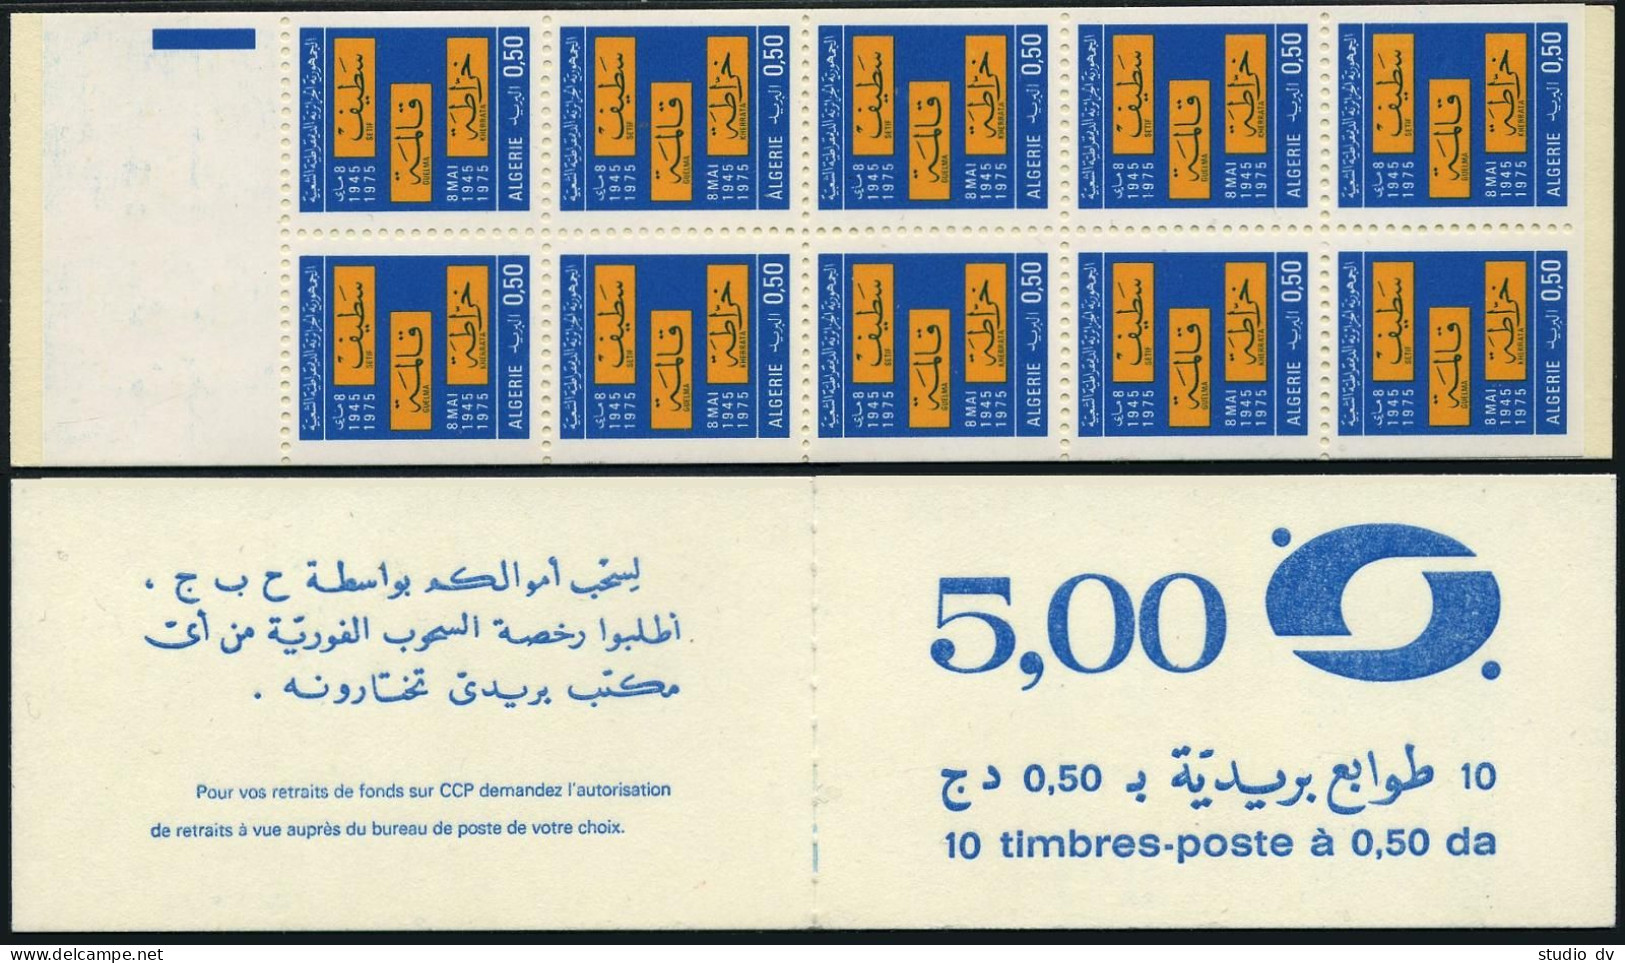 Algeria 572b Booklet Of 10, MNH. Michel 682 MH 2. Setif,Guelma, Kherrata, 1976. - Algérie (1962-...)